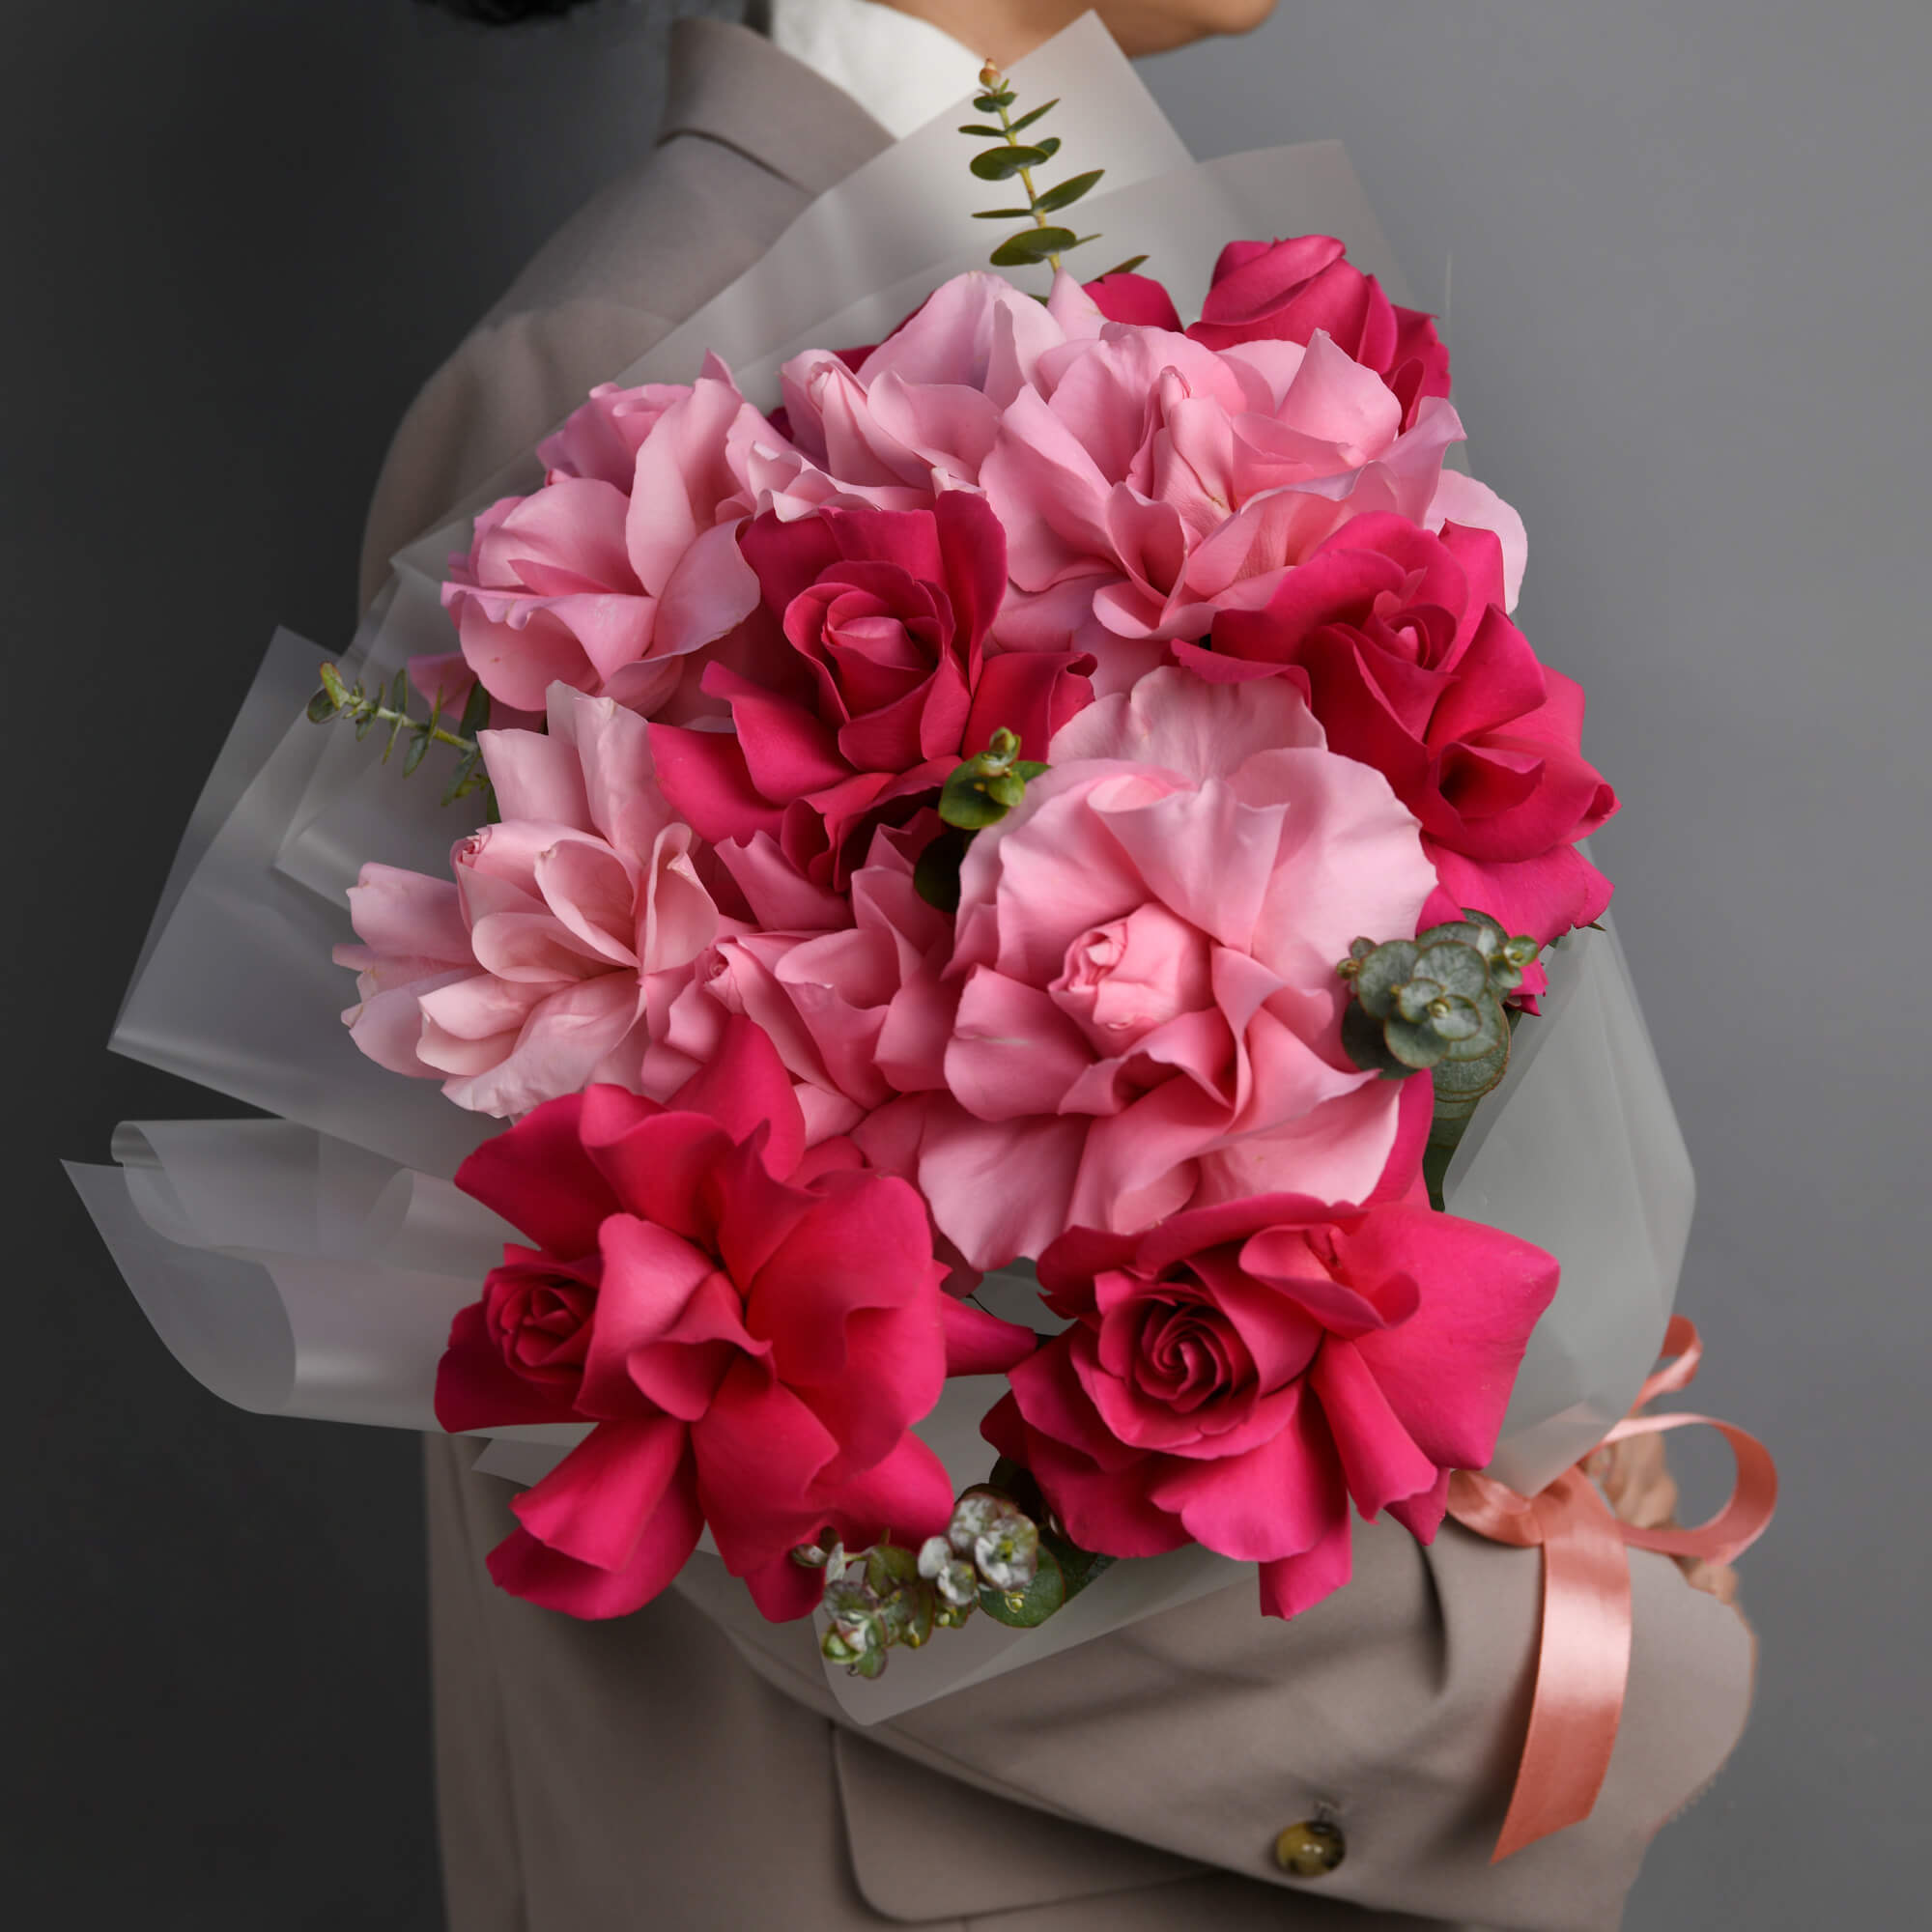 Buchet cu trandafiri speciali roz multicolori